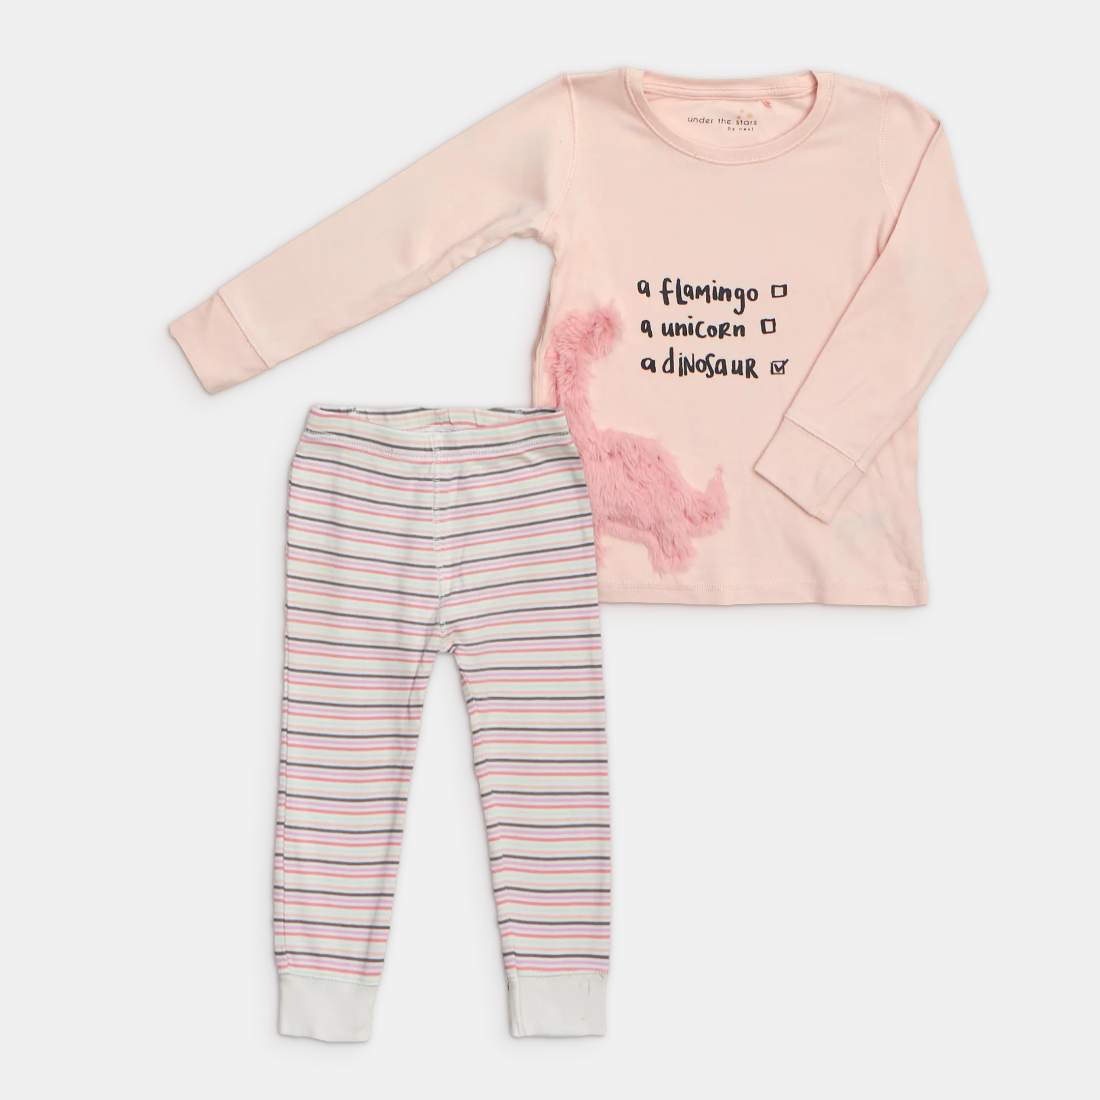 Storlek 98/104 - - Inimini - begagnade barnkläder i matchande klädpaket